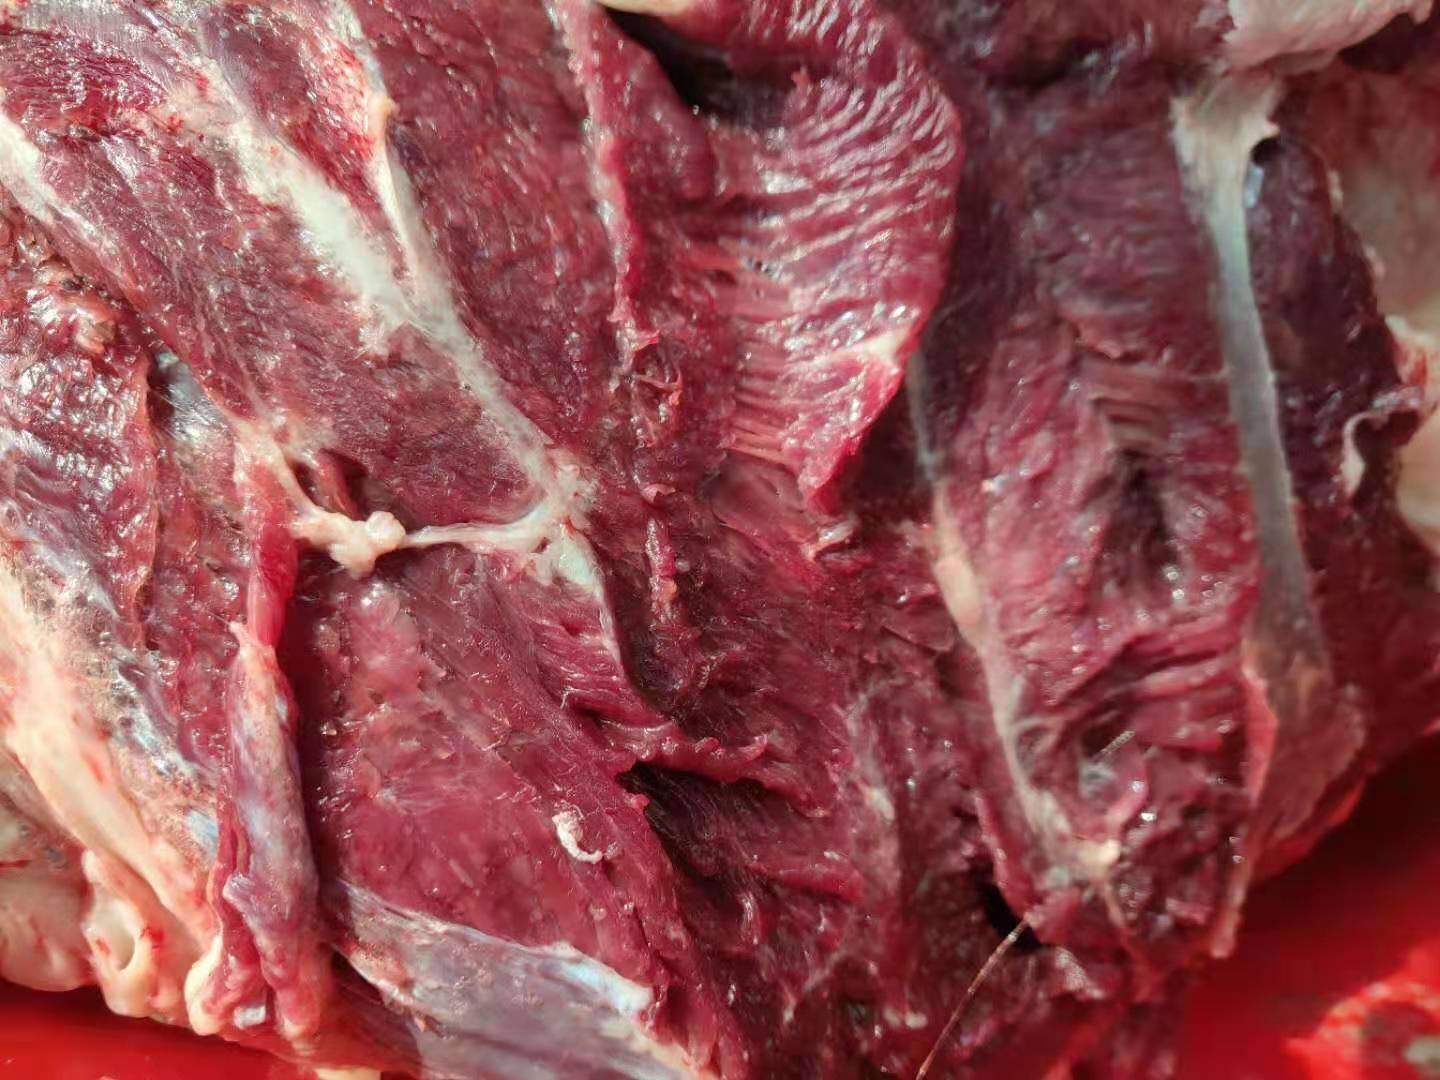 牛肉和马肉的区分从肌肉的脂肪看:牛肉脂肪呈白色,肌纤维间脂肪明显